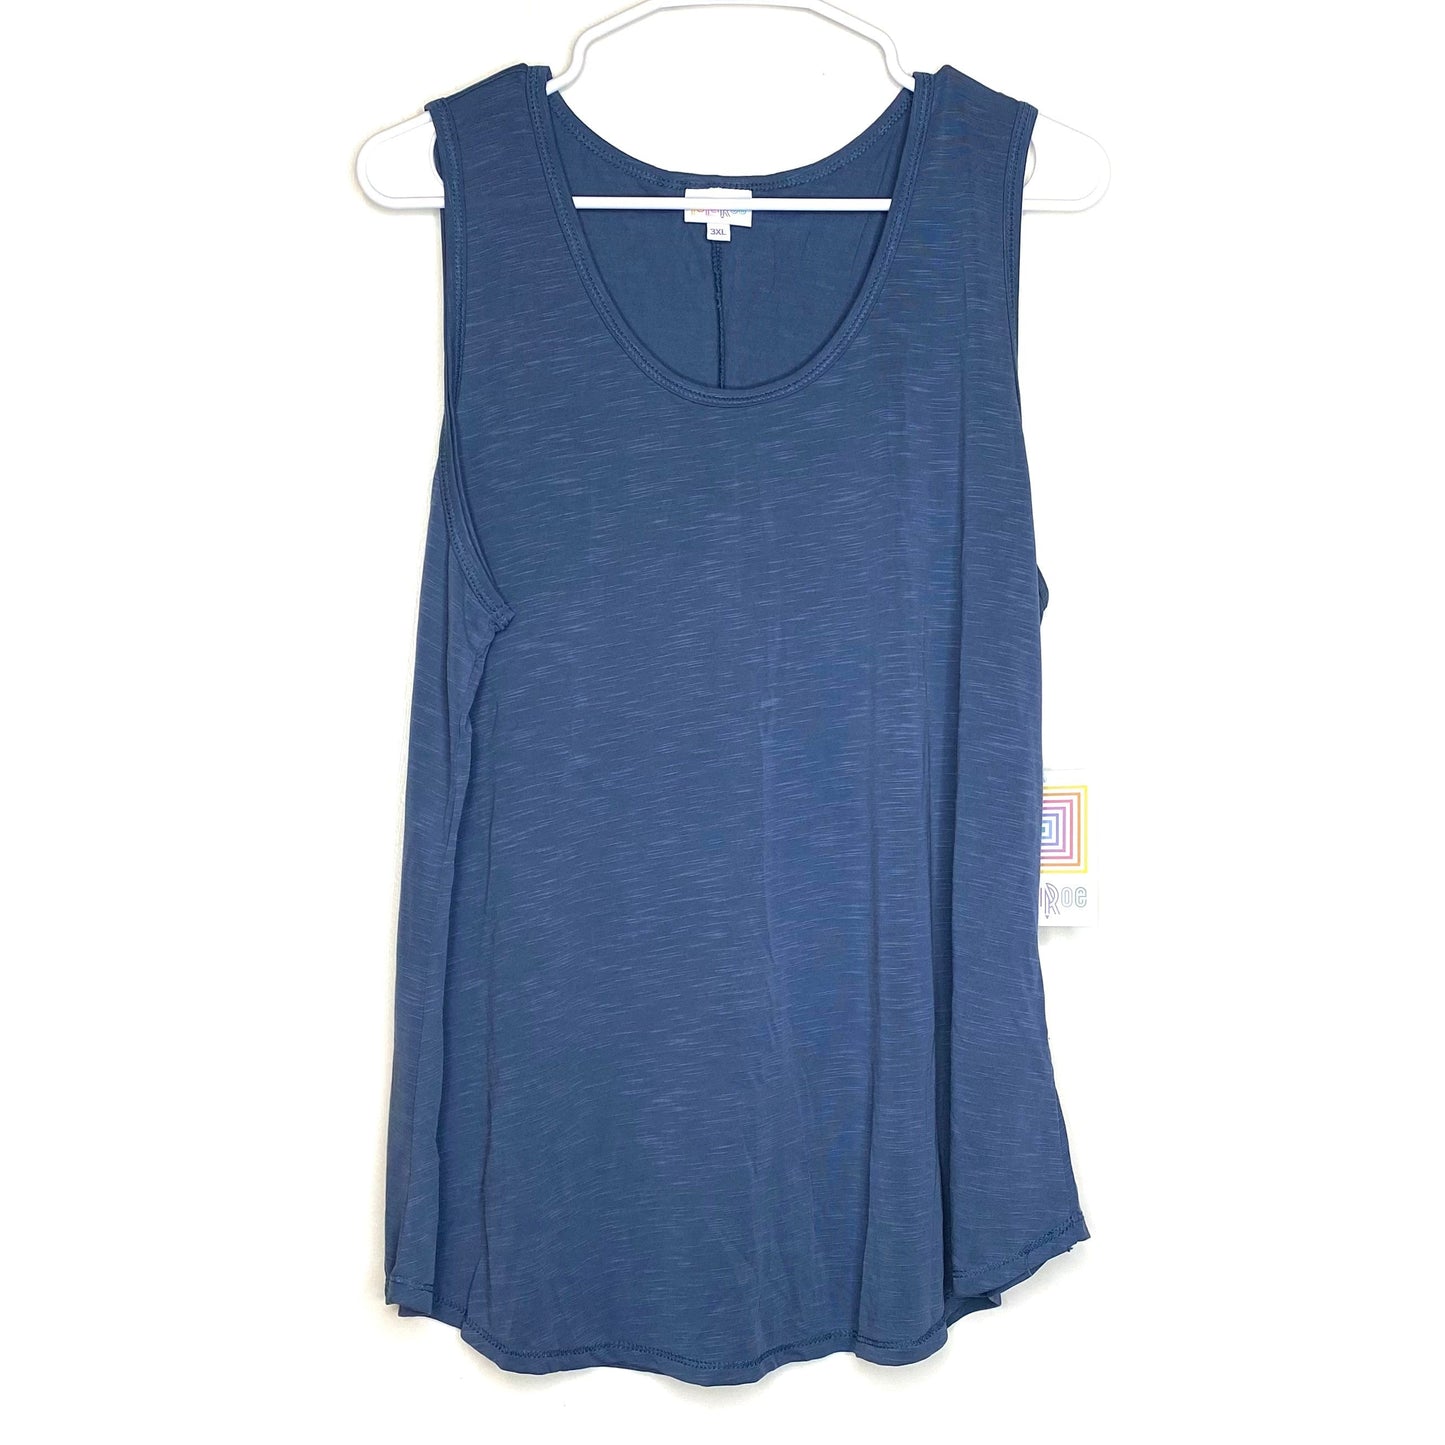 LuLaRoe | Brushed Sleeveless Tank Top Shirt | Color: Stone Blue | Size: 3XL | NWT